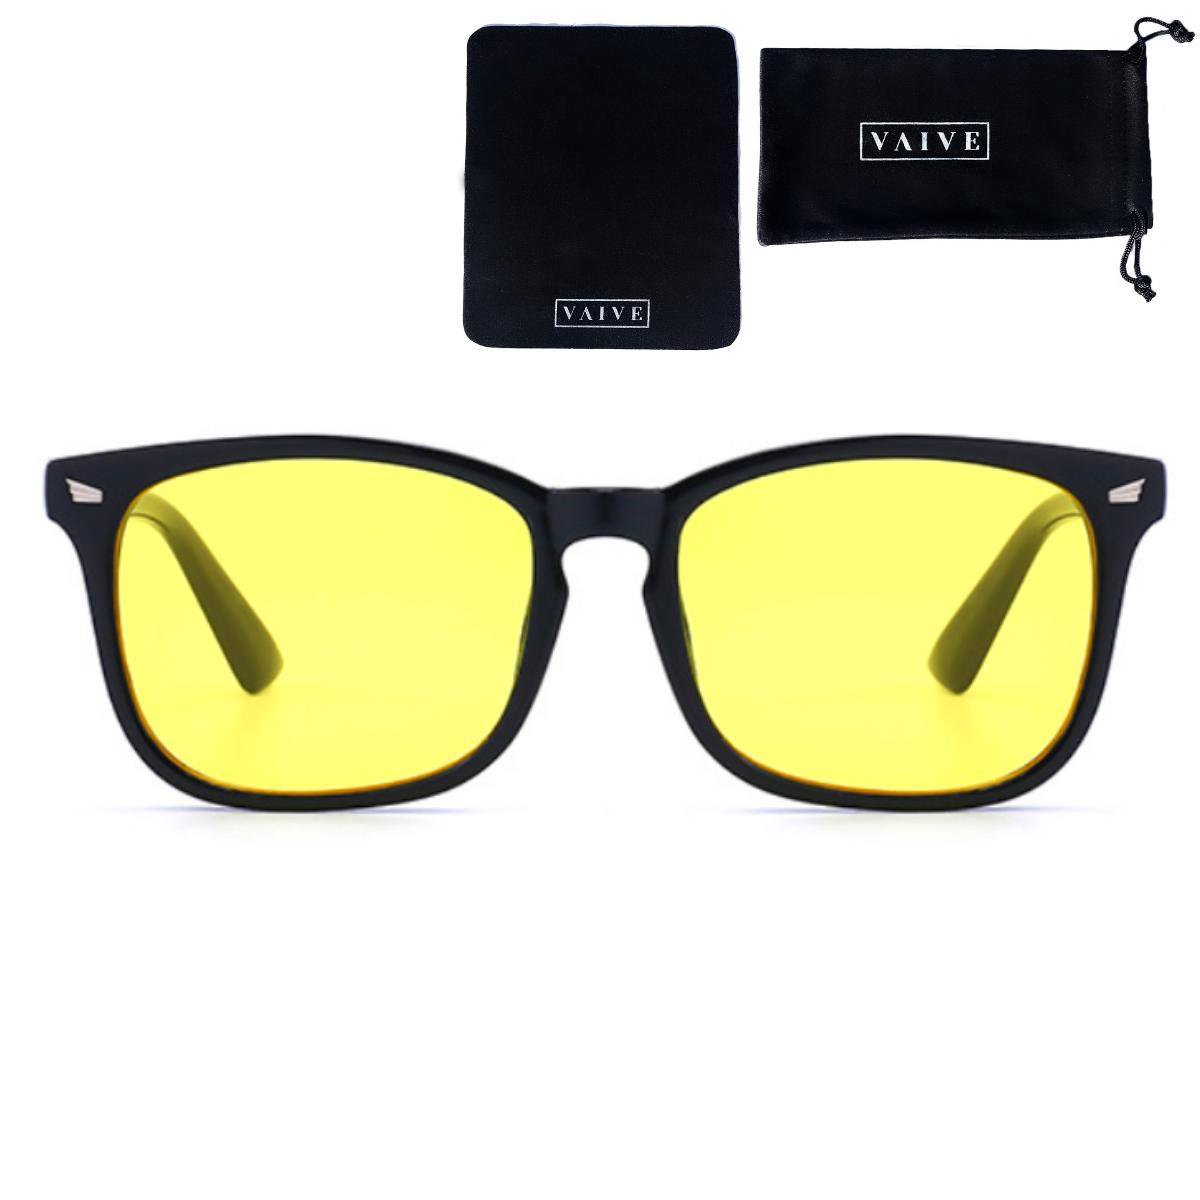 VAIVE Nachtbril voor het rijden in de nacht - Veilig Rijden - Avondbril - Nacht lenzen - Nacht Bril voor Auto of motor - Autobril